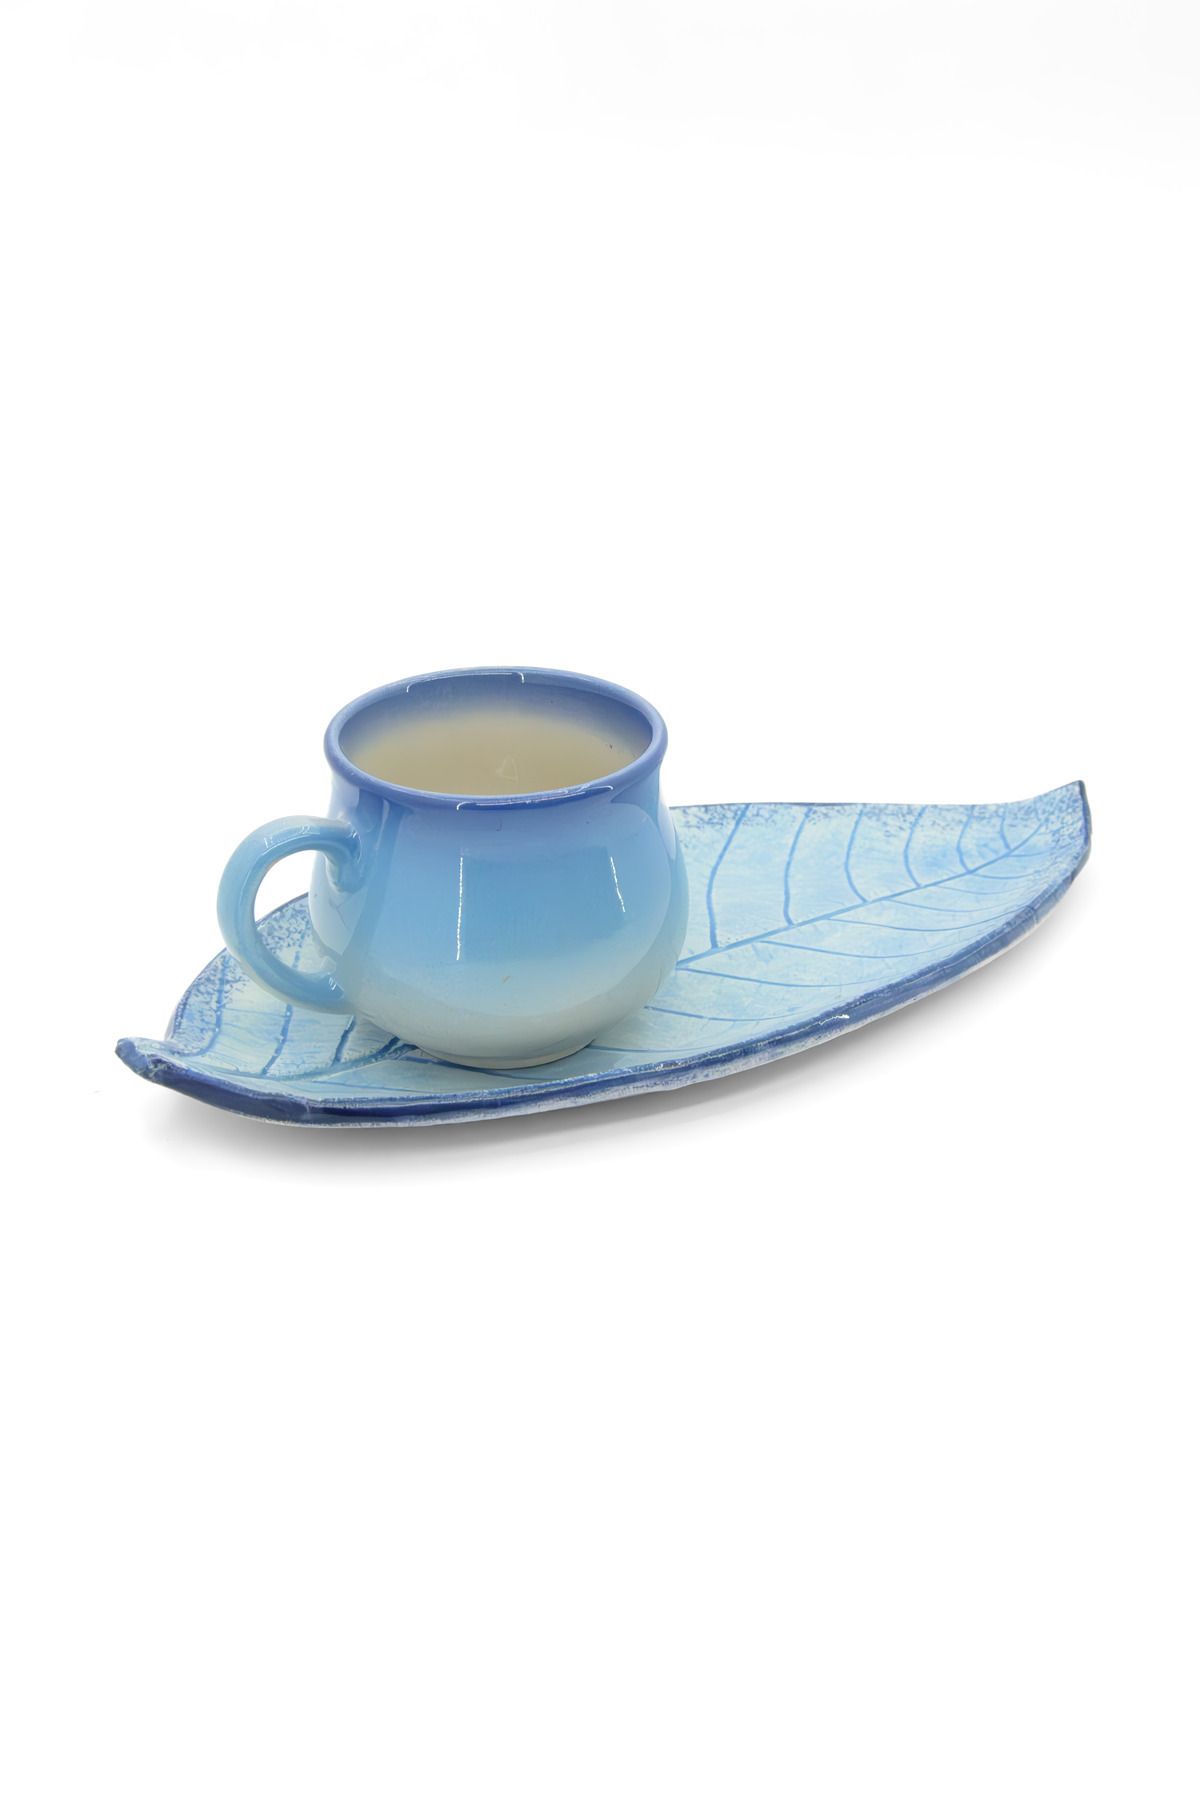 Loomart Dekoratif Düz Yaprak Tasarımlı El Yapımı Seramik Tek Kişilik Kahve Fincanı Seti - Mavi